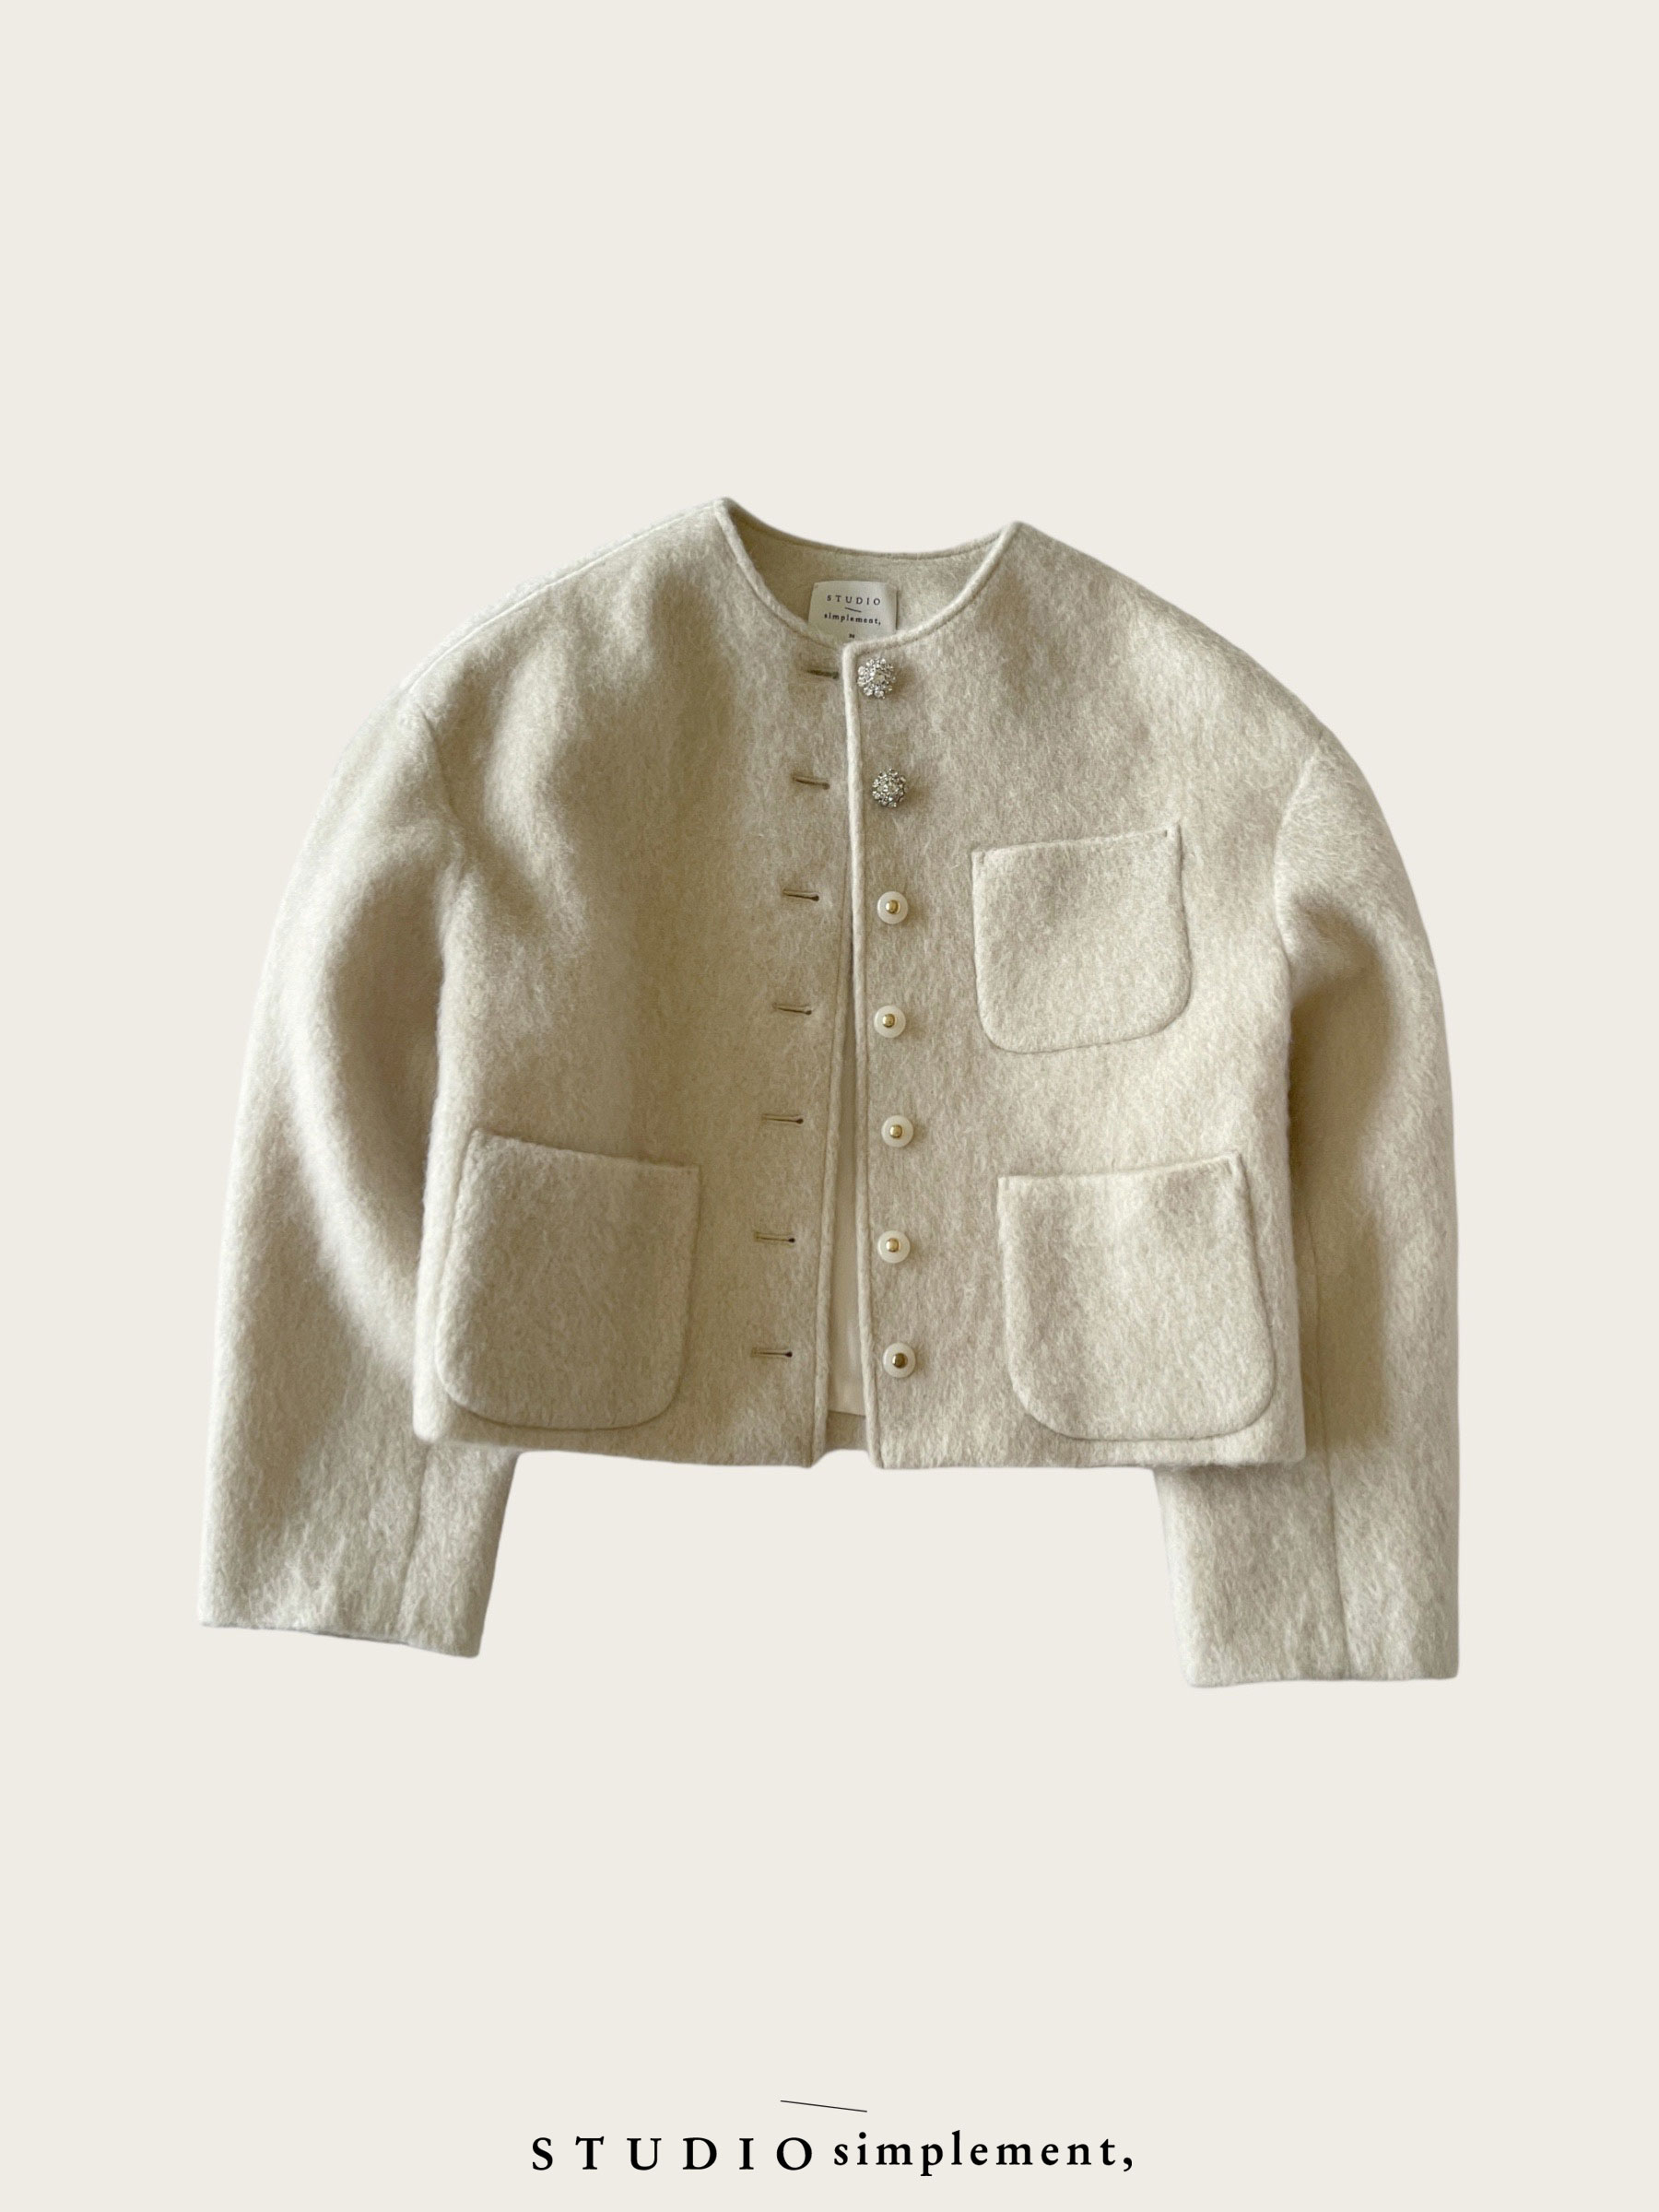 Mattie Shaggy Jacket (fabric by TAKISADA NAGOYA)